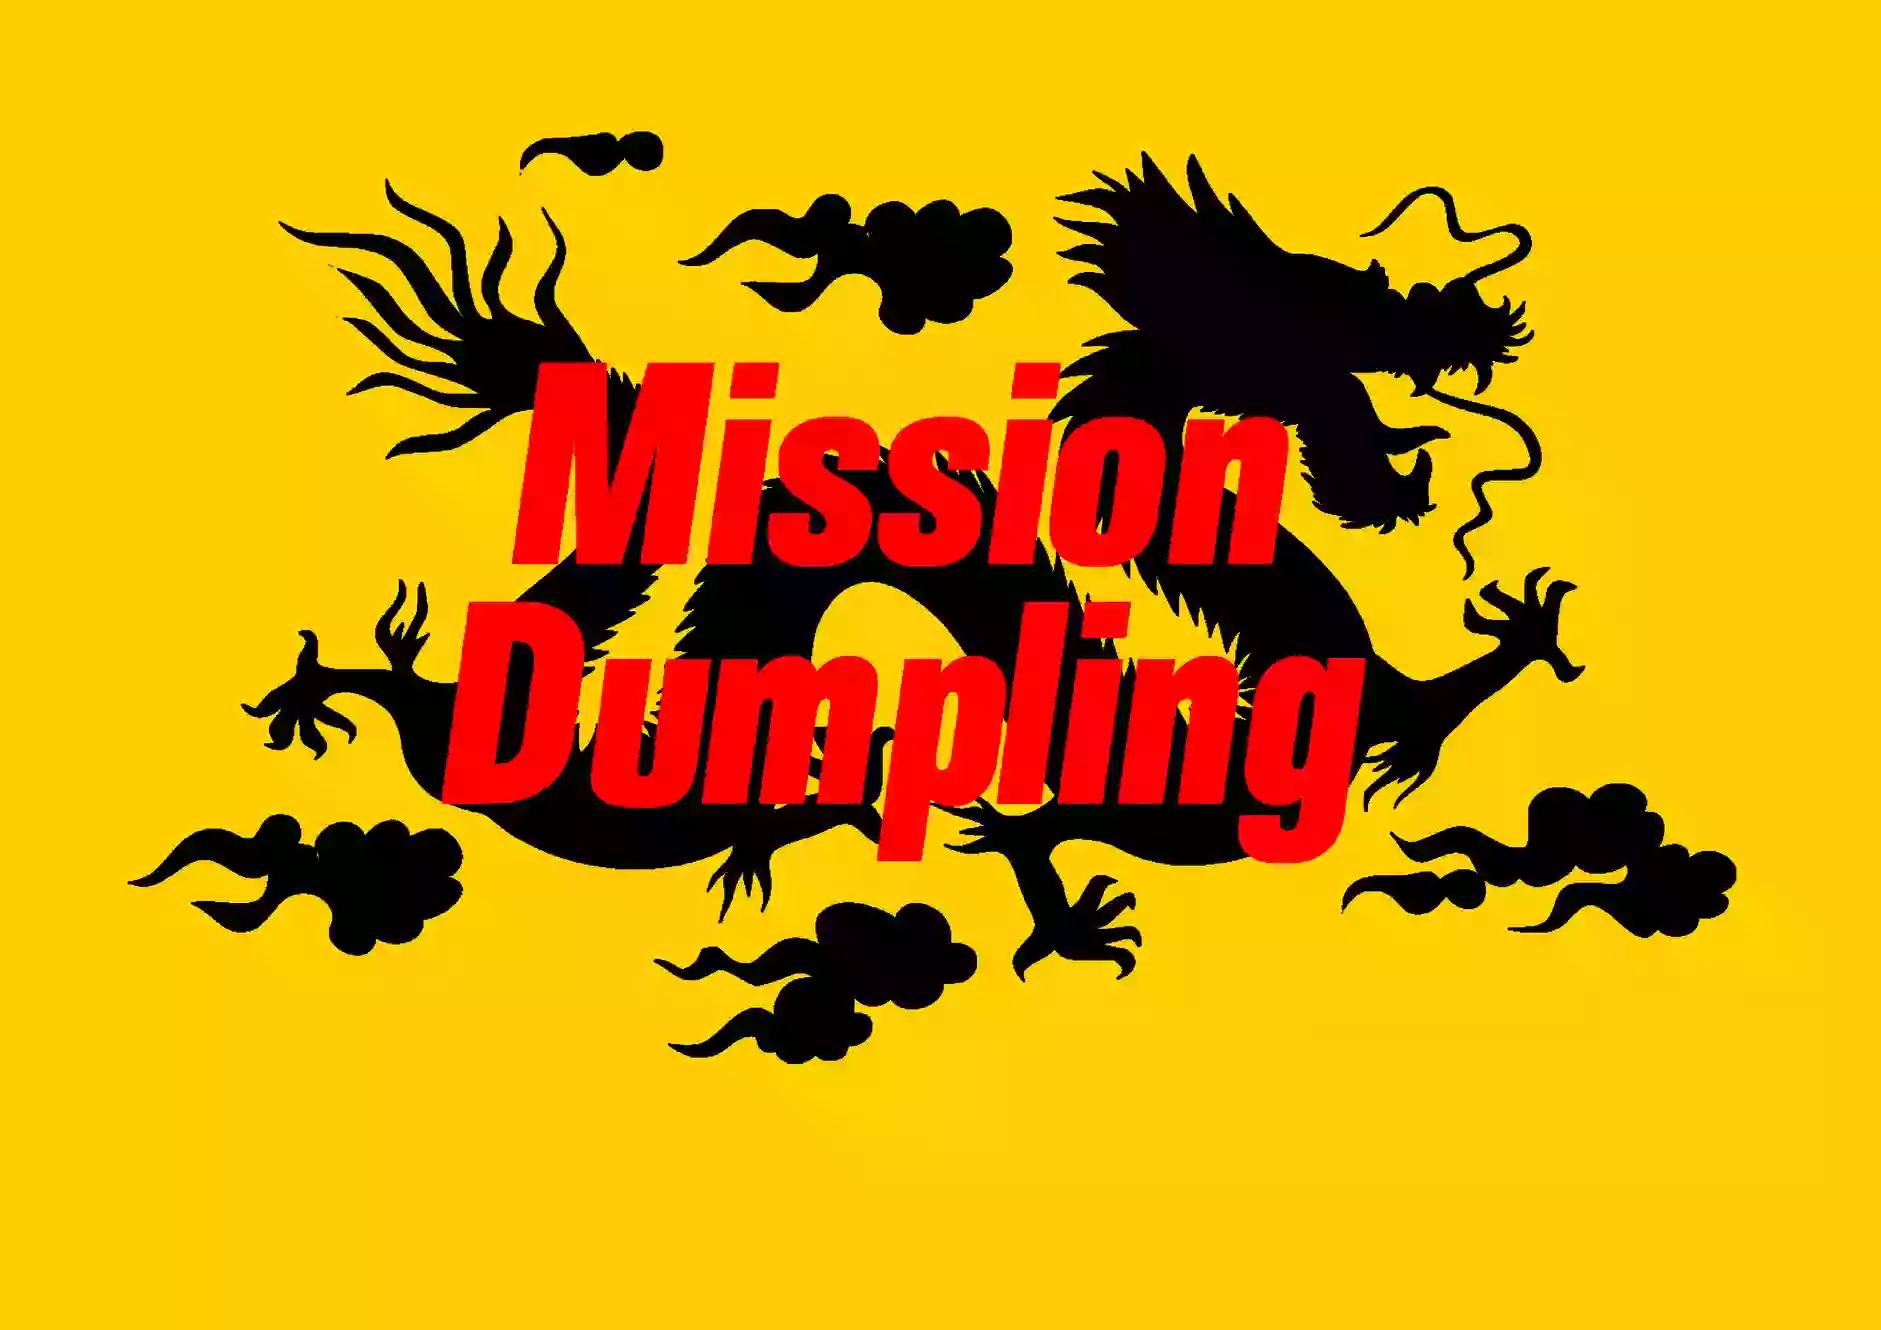 Mission dumpling